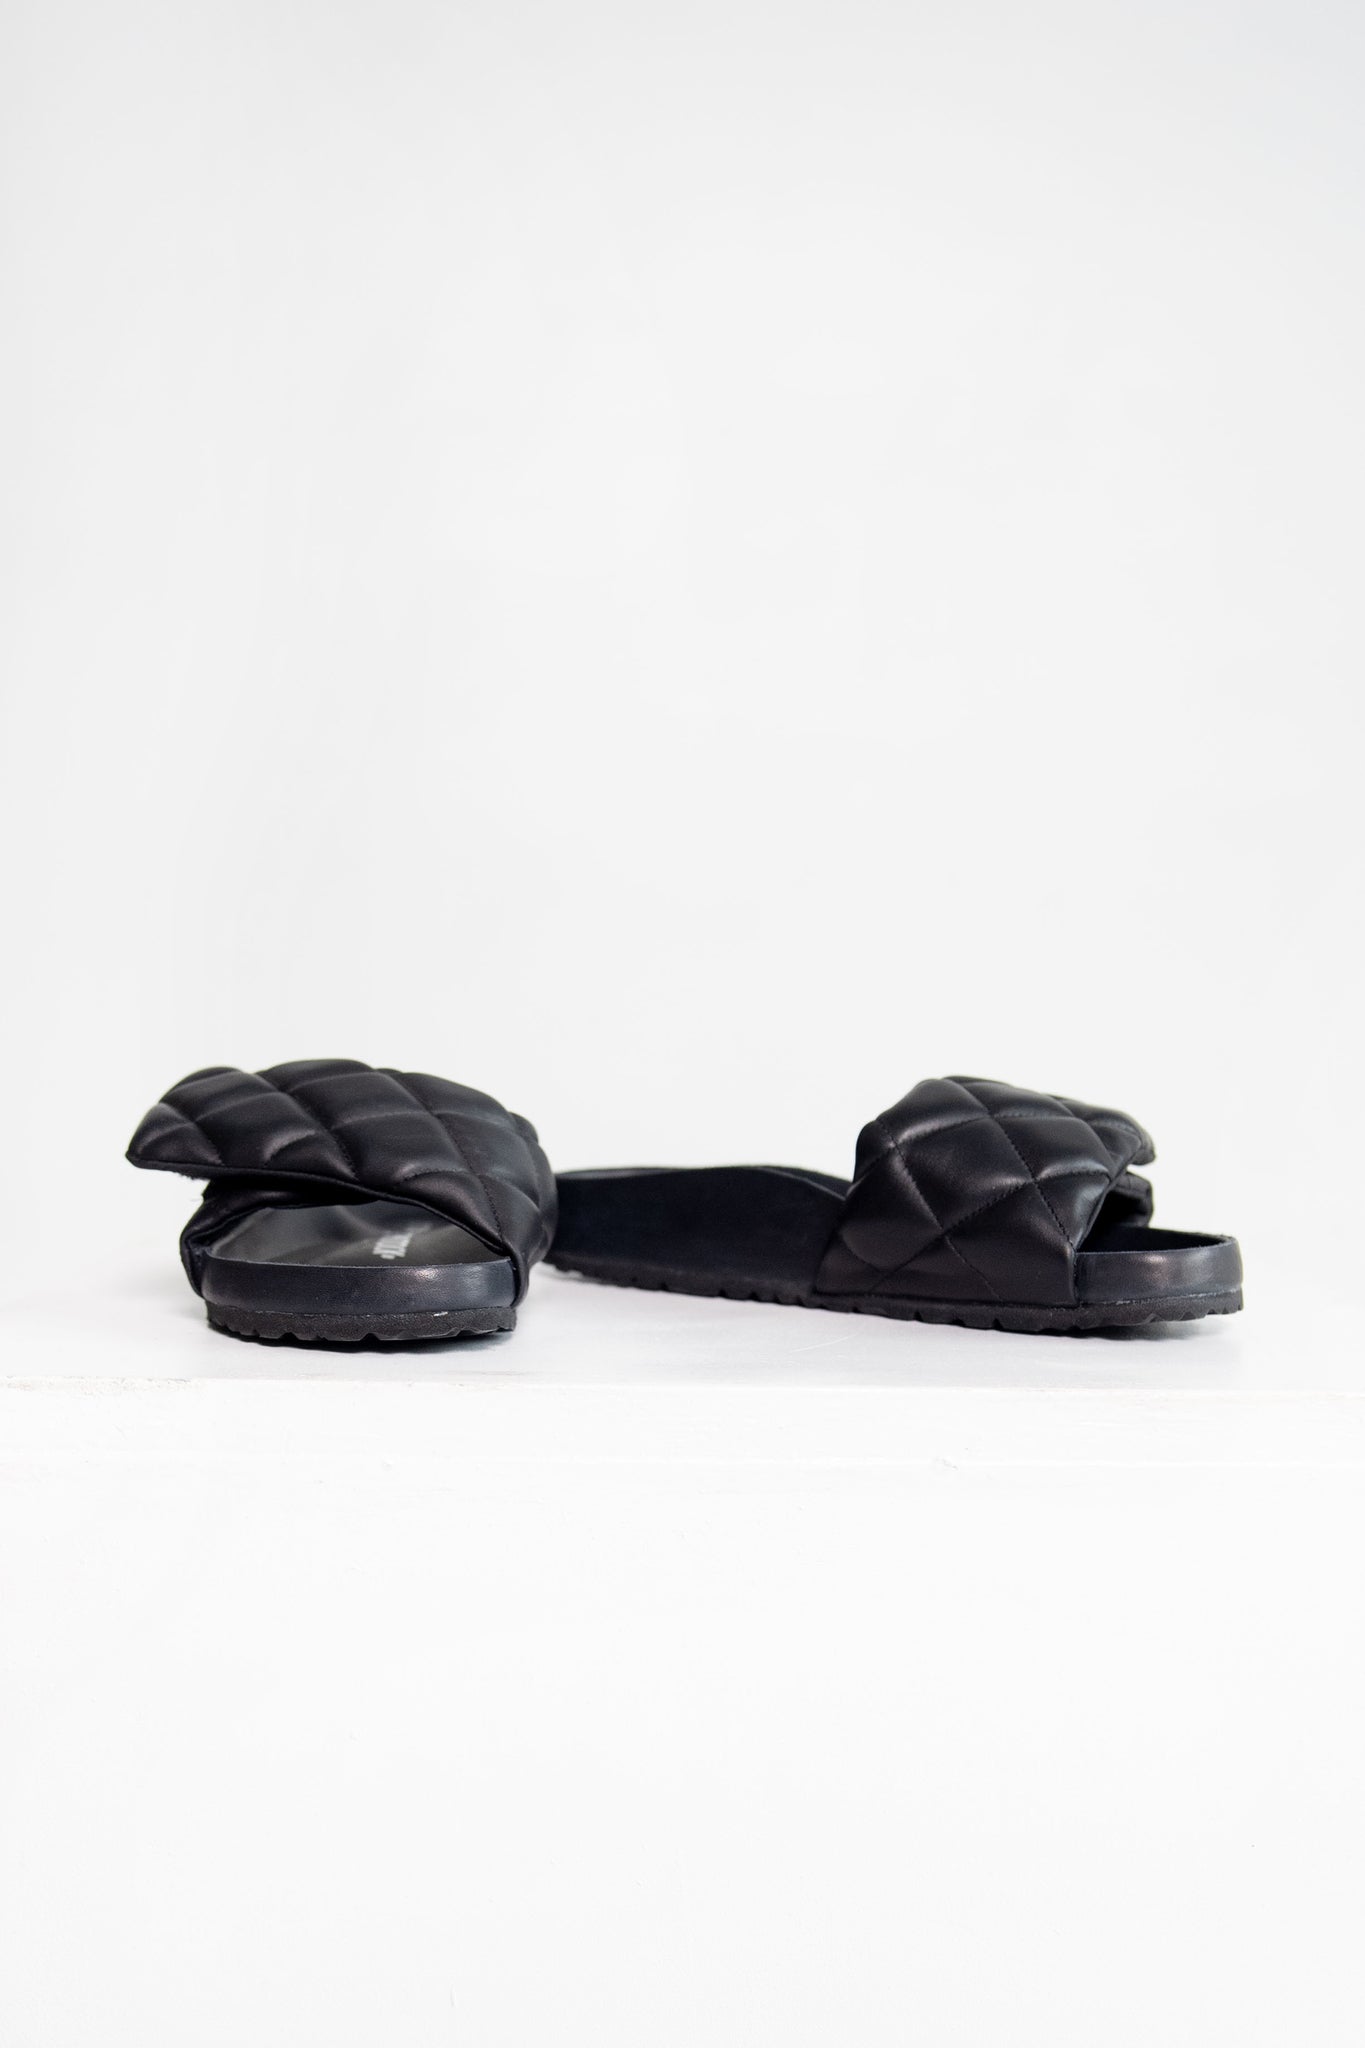 BIRKENSTOCK 1774 - Sylt Padded Leather, Black